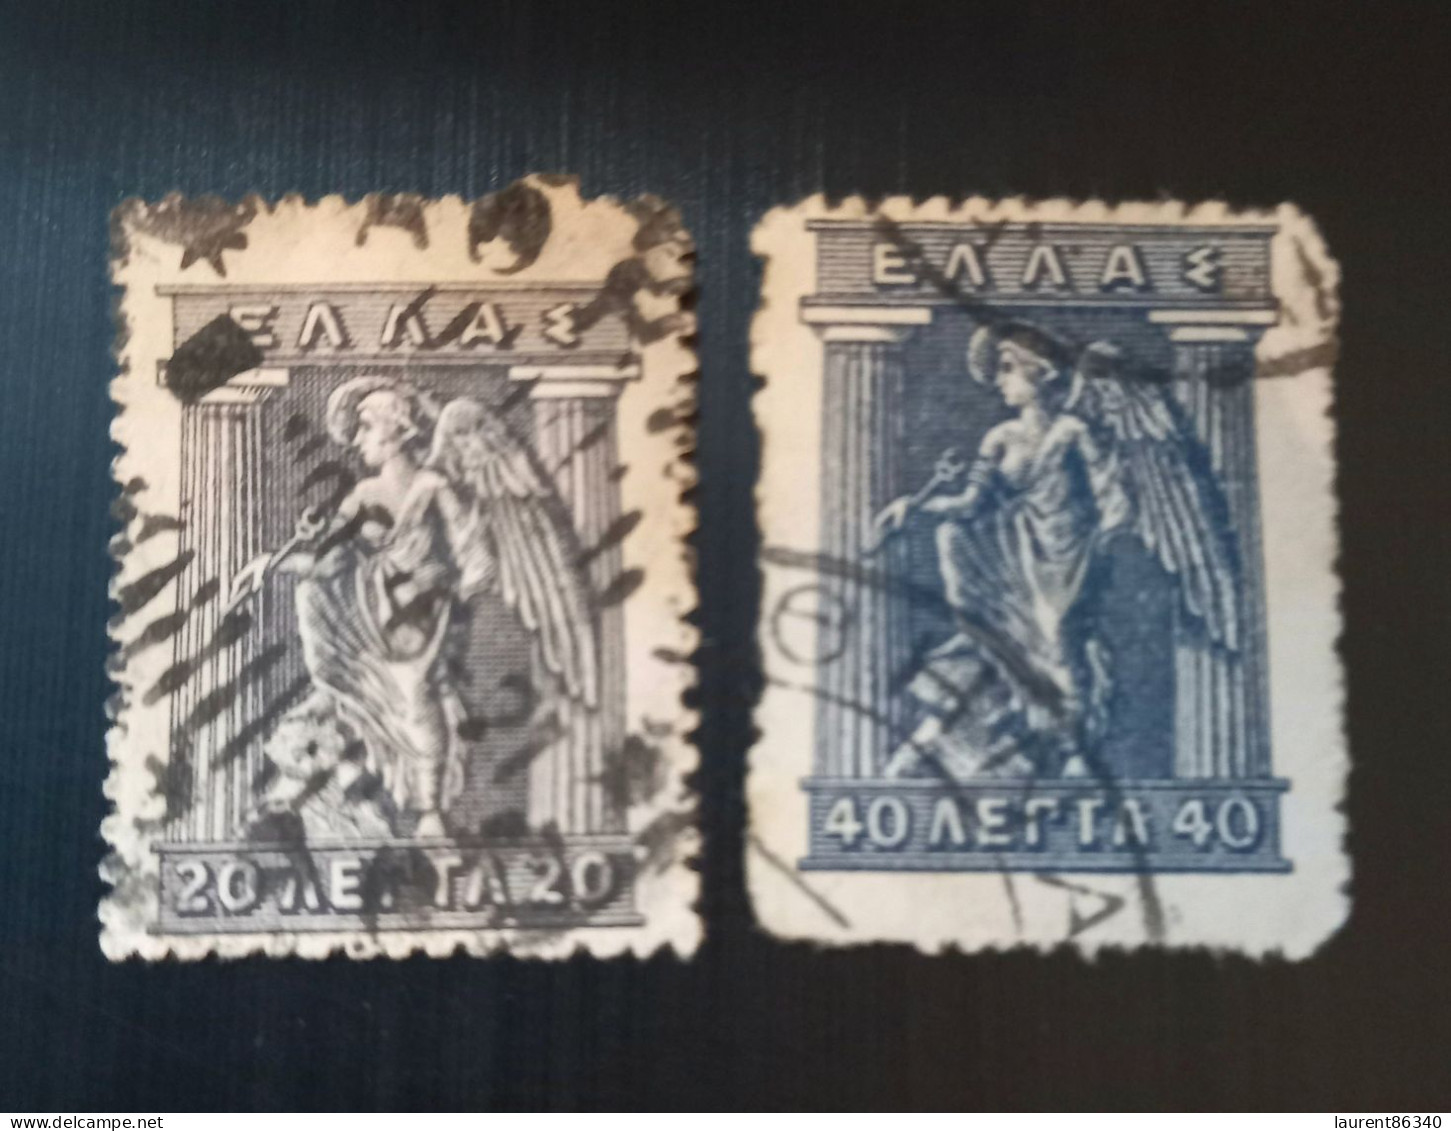 Grèce 1911 -1921 Mythological Figures - Engraved Issue Lot 2 - Used Stamps